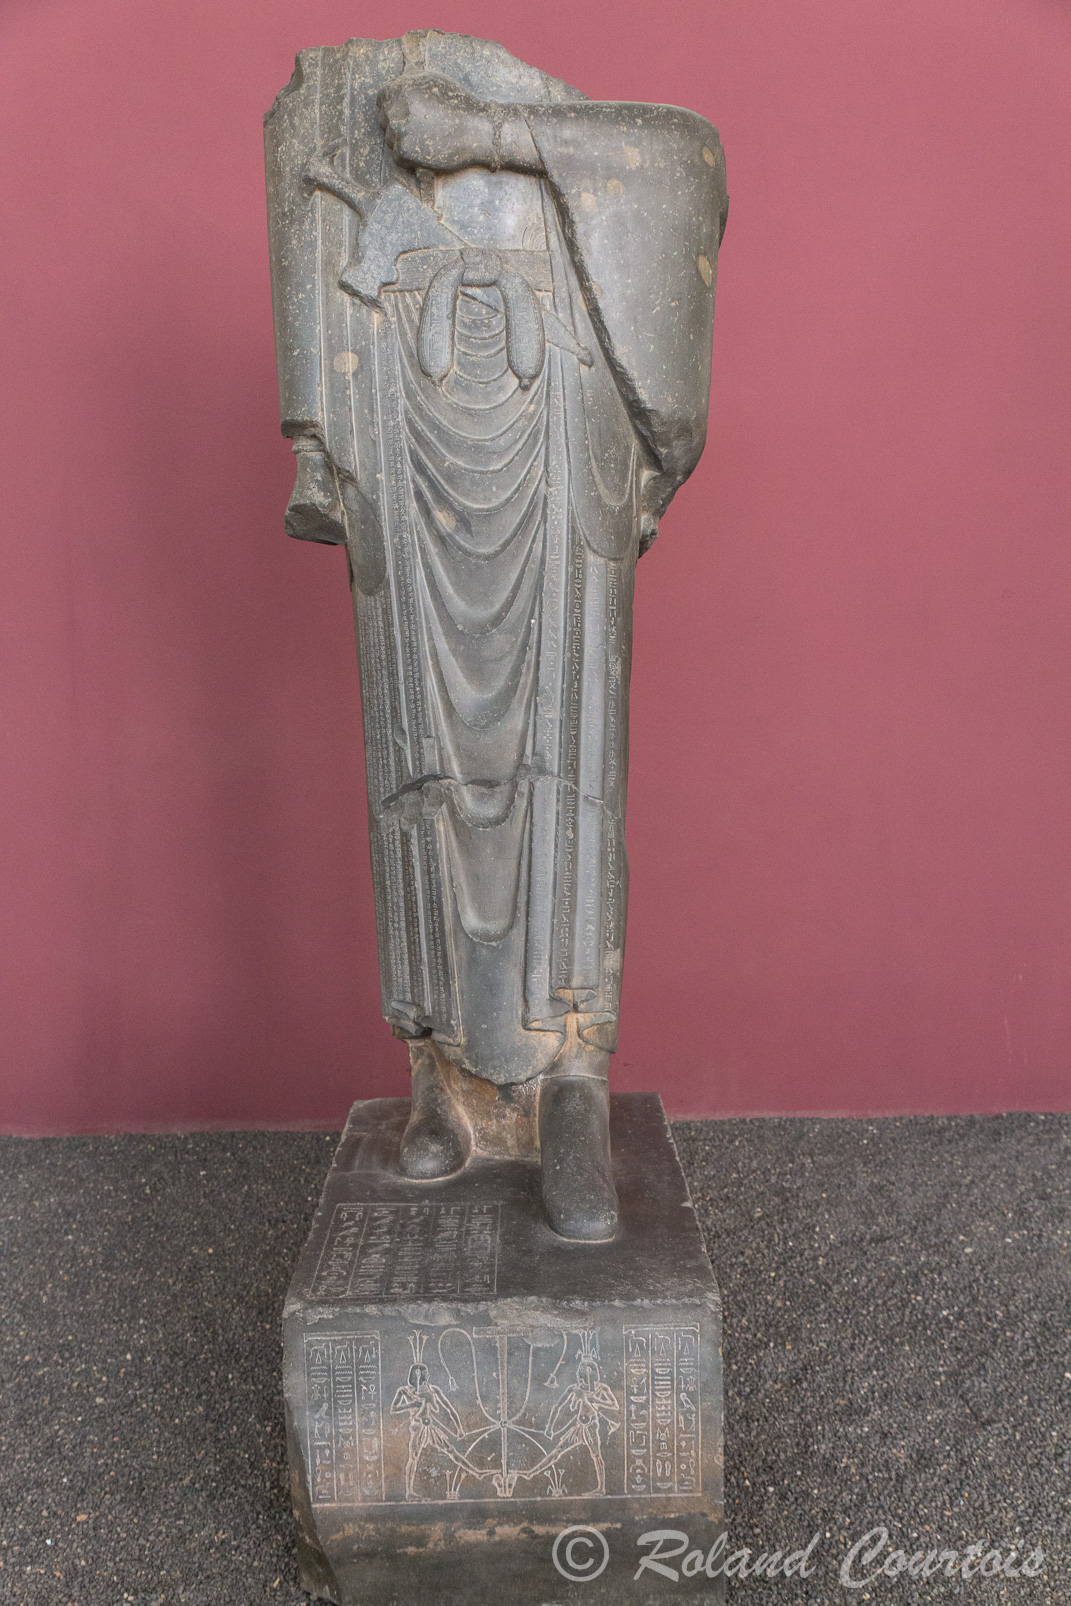 Musée archéologique Téhéran: Cette statue de Darius Ier a été découverte à Suse en 1972,  C'est une des rares statues en ronde bosse de l'époque achéménide figurant un souverain. 
La statue est en pierre arénite grise et mesure aujourd'hui 2,46 mètres. Elle devait mesurer environ 3,5 mètres autrefois avec la tête qui, à ce jour, n'a pas été retrouvée.